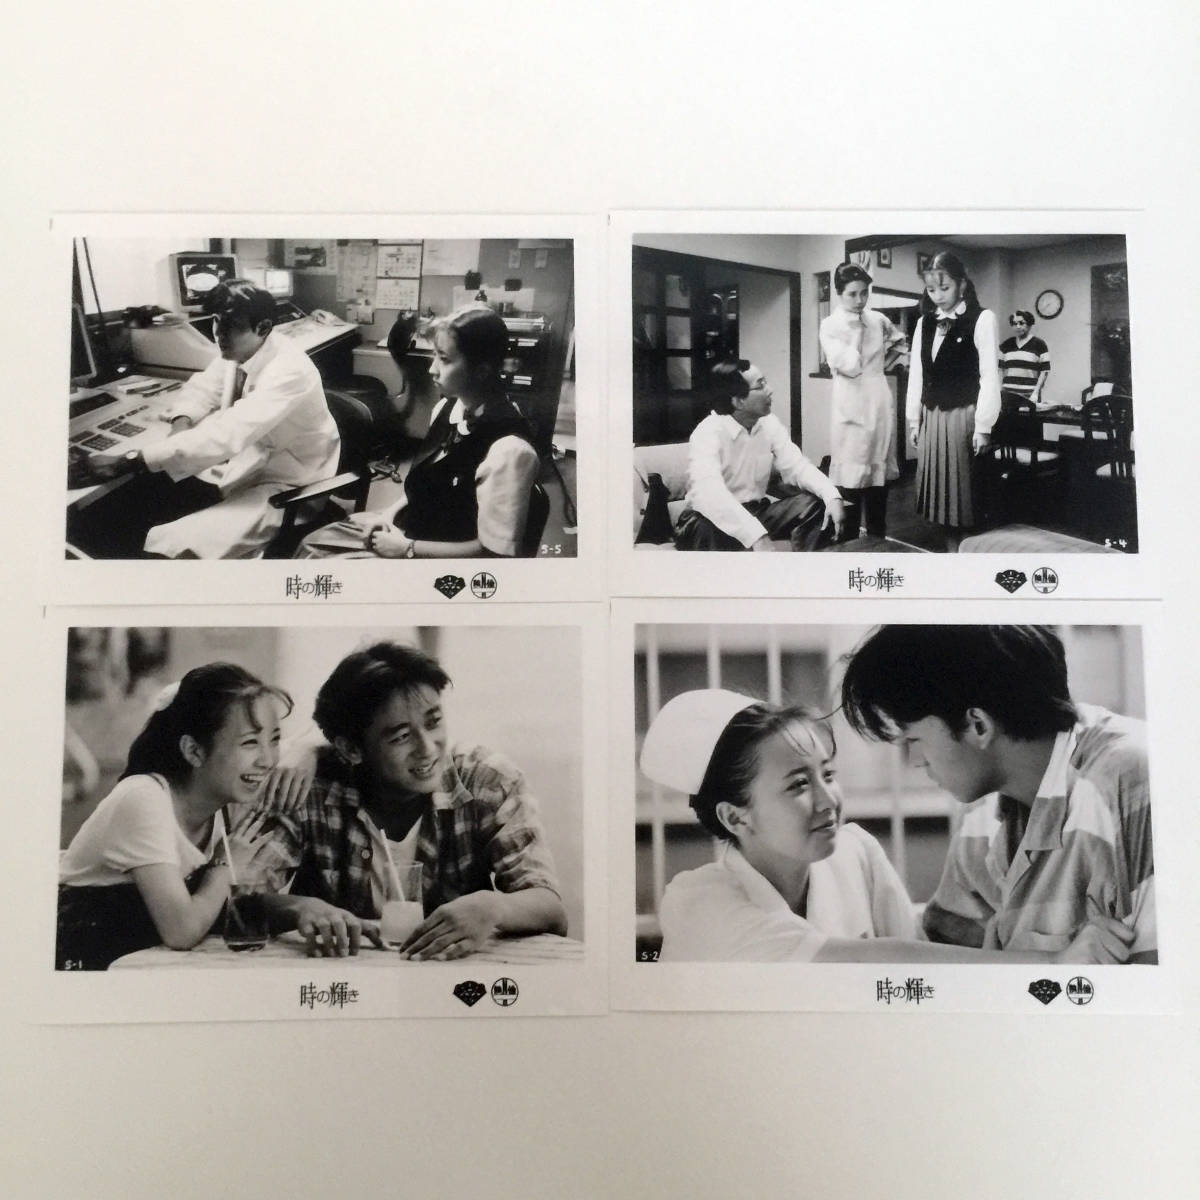 Achetez-le maintenant Toutes les 4 photos Pas à vendre Photographie de cinéma Film Shine of Time Yumiko Takahashi Koji Yamamoto Nurse Angel in White Photographie Taille du meuble Réalisé par Yuzo Asahara, film, vidéo, Produits liés au cinéma, autres